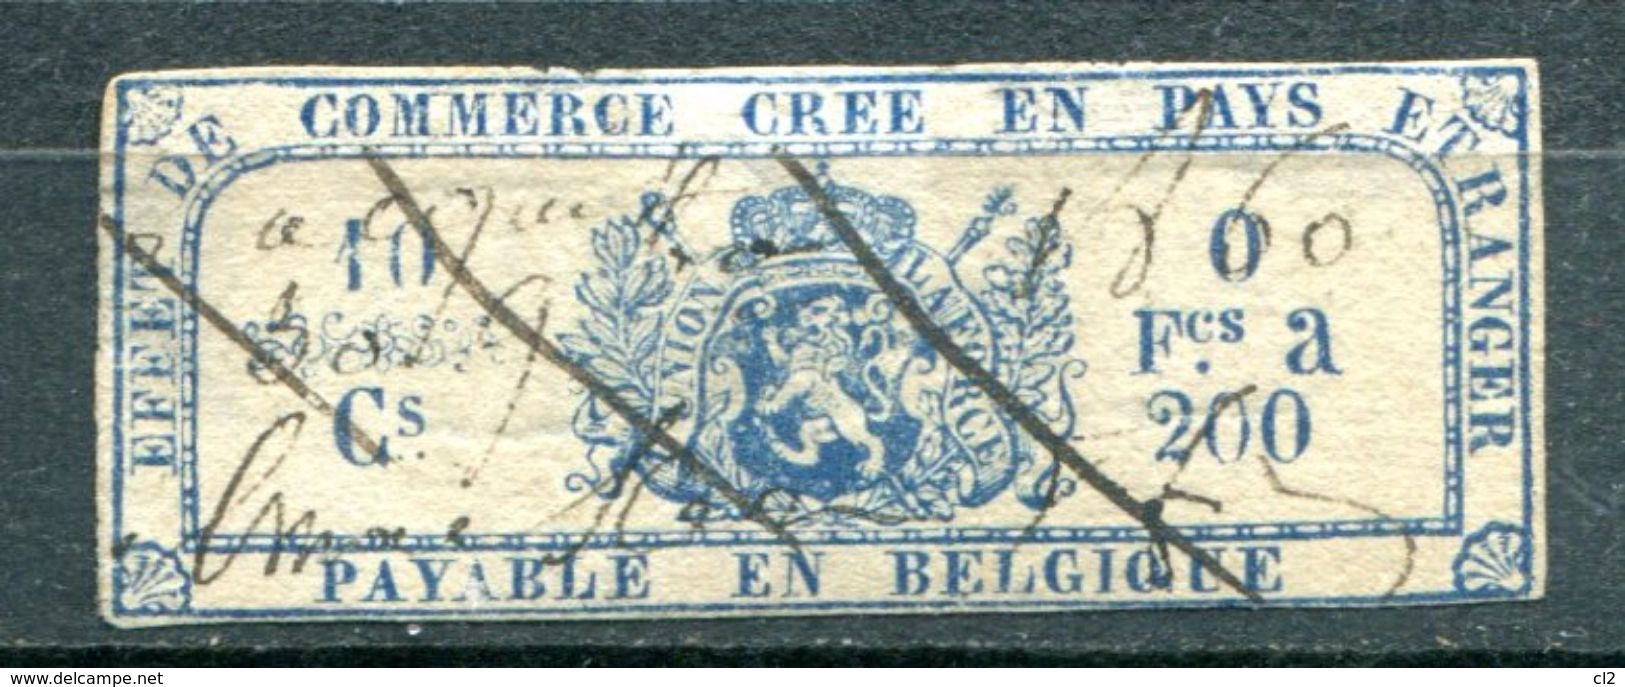 BELGIQUE - Fiscaux - Effet De Commerce Annulé En 1860 - Sellos